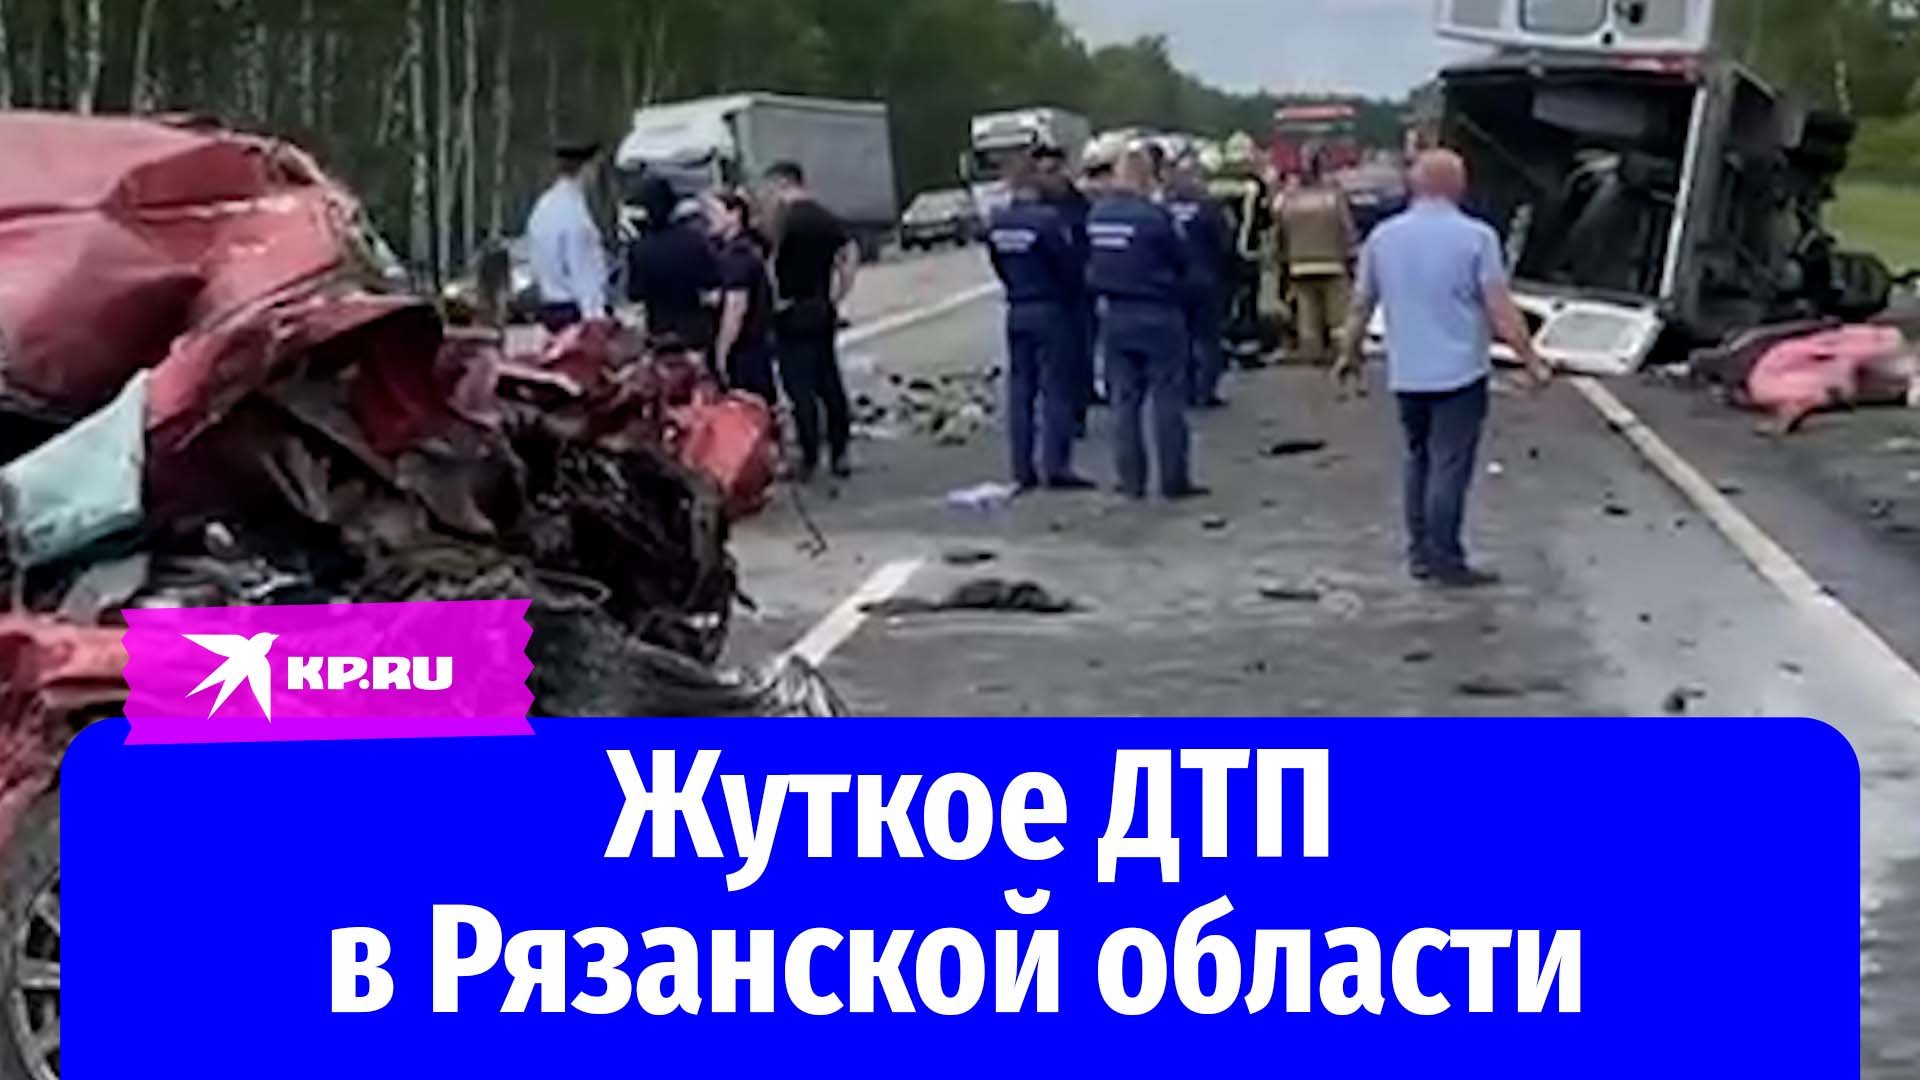 Видео с места жуткого ДТП в Рязанской области опубликовали очевидцы